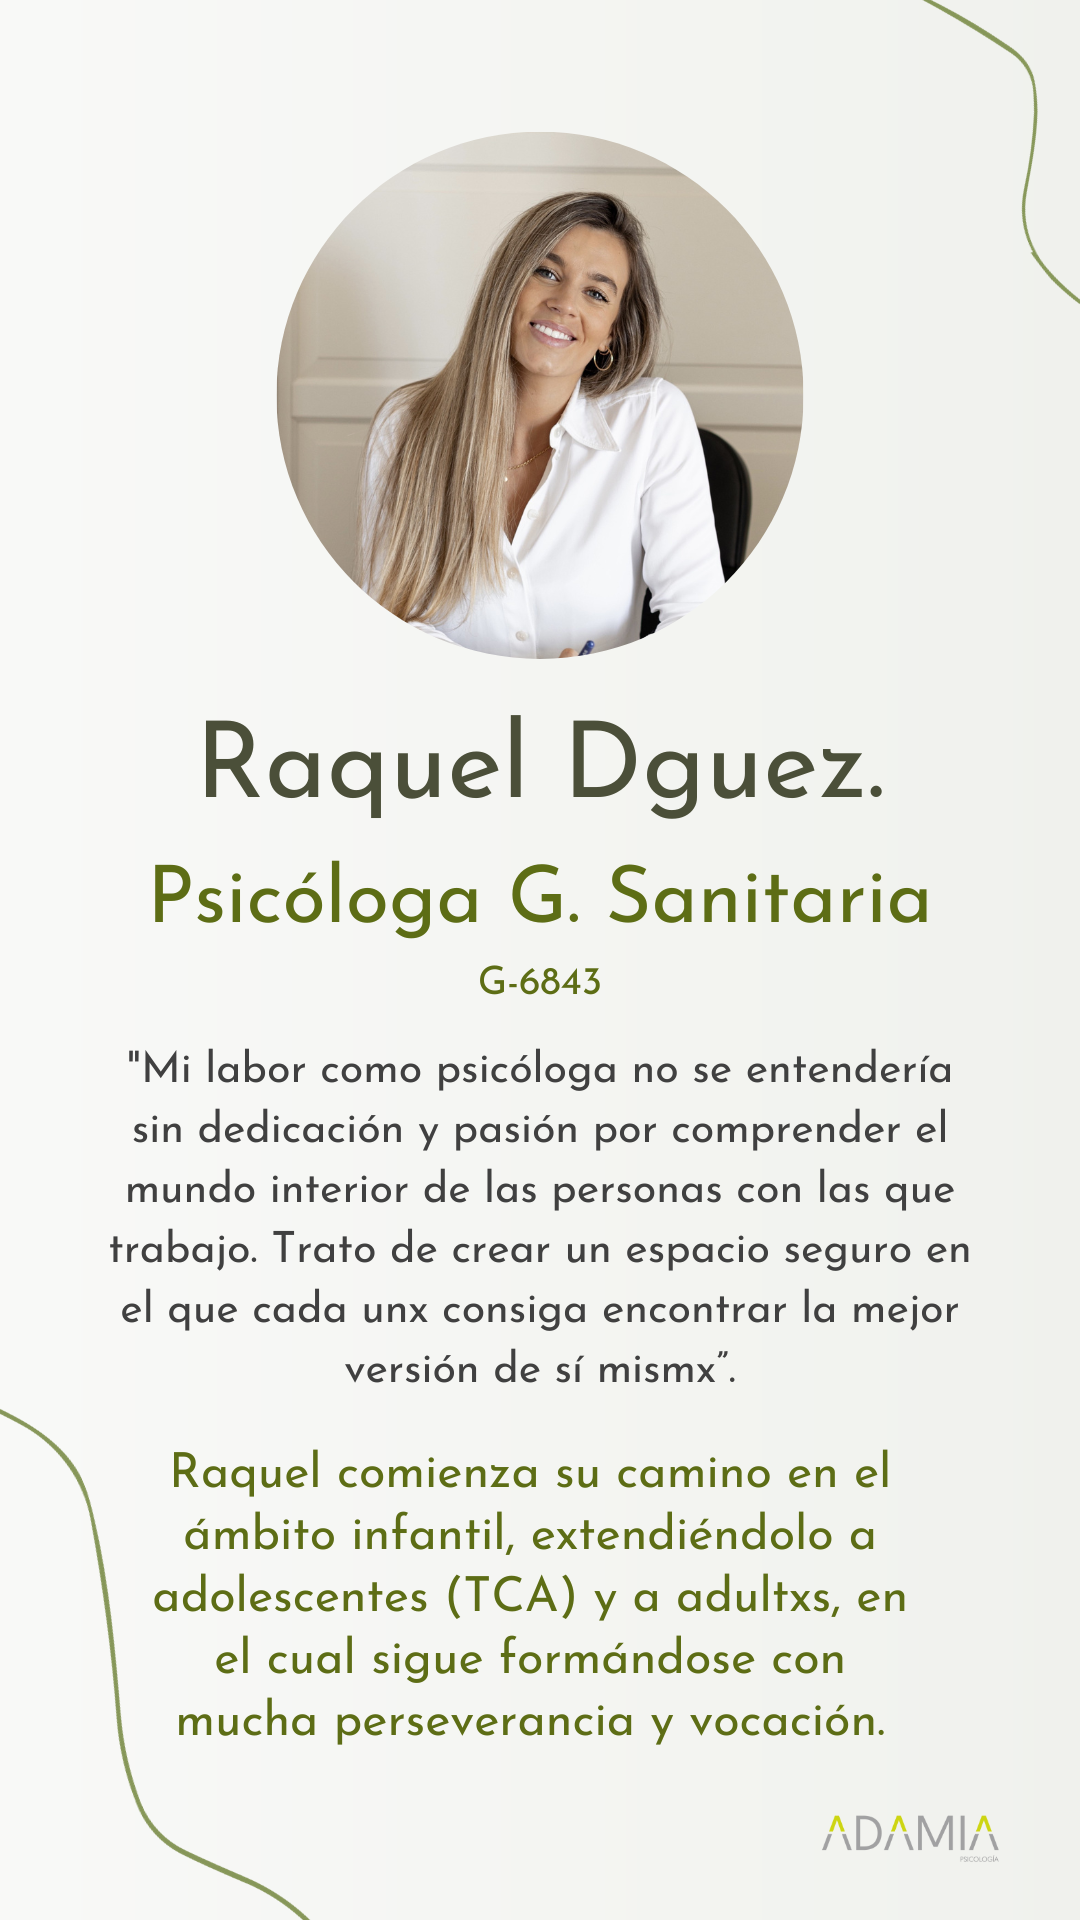 Raquel Dguez., psicóloga en Vigo